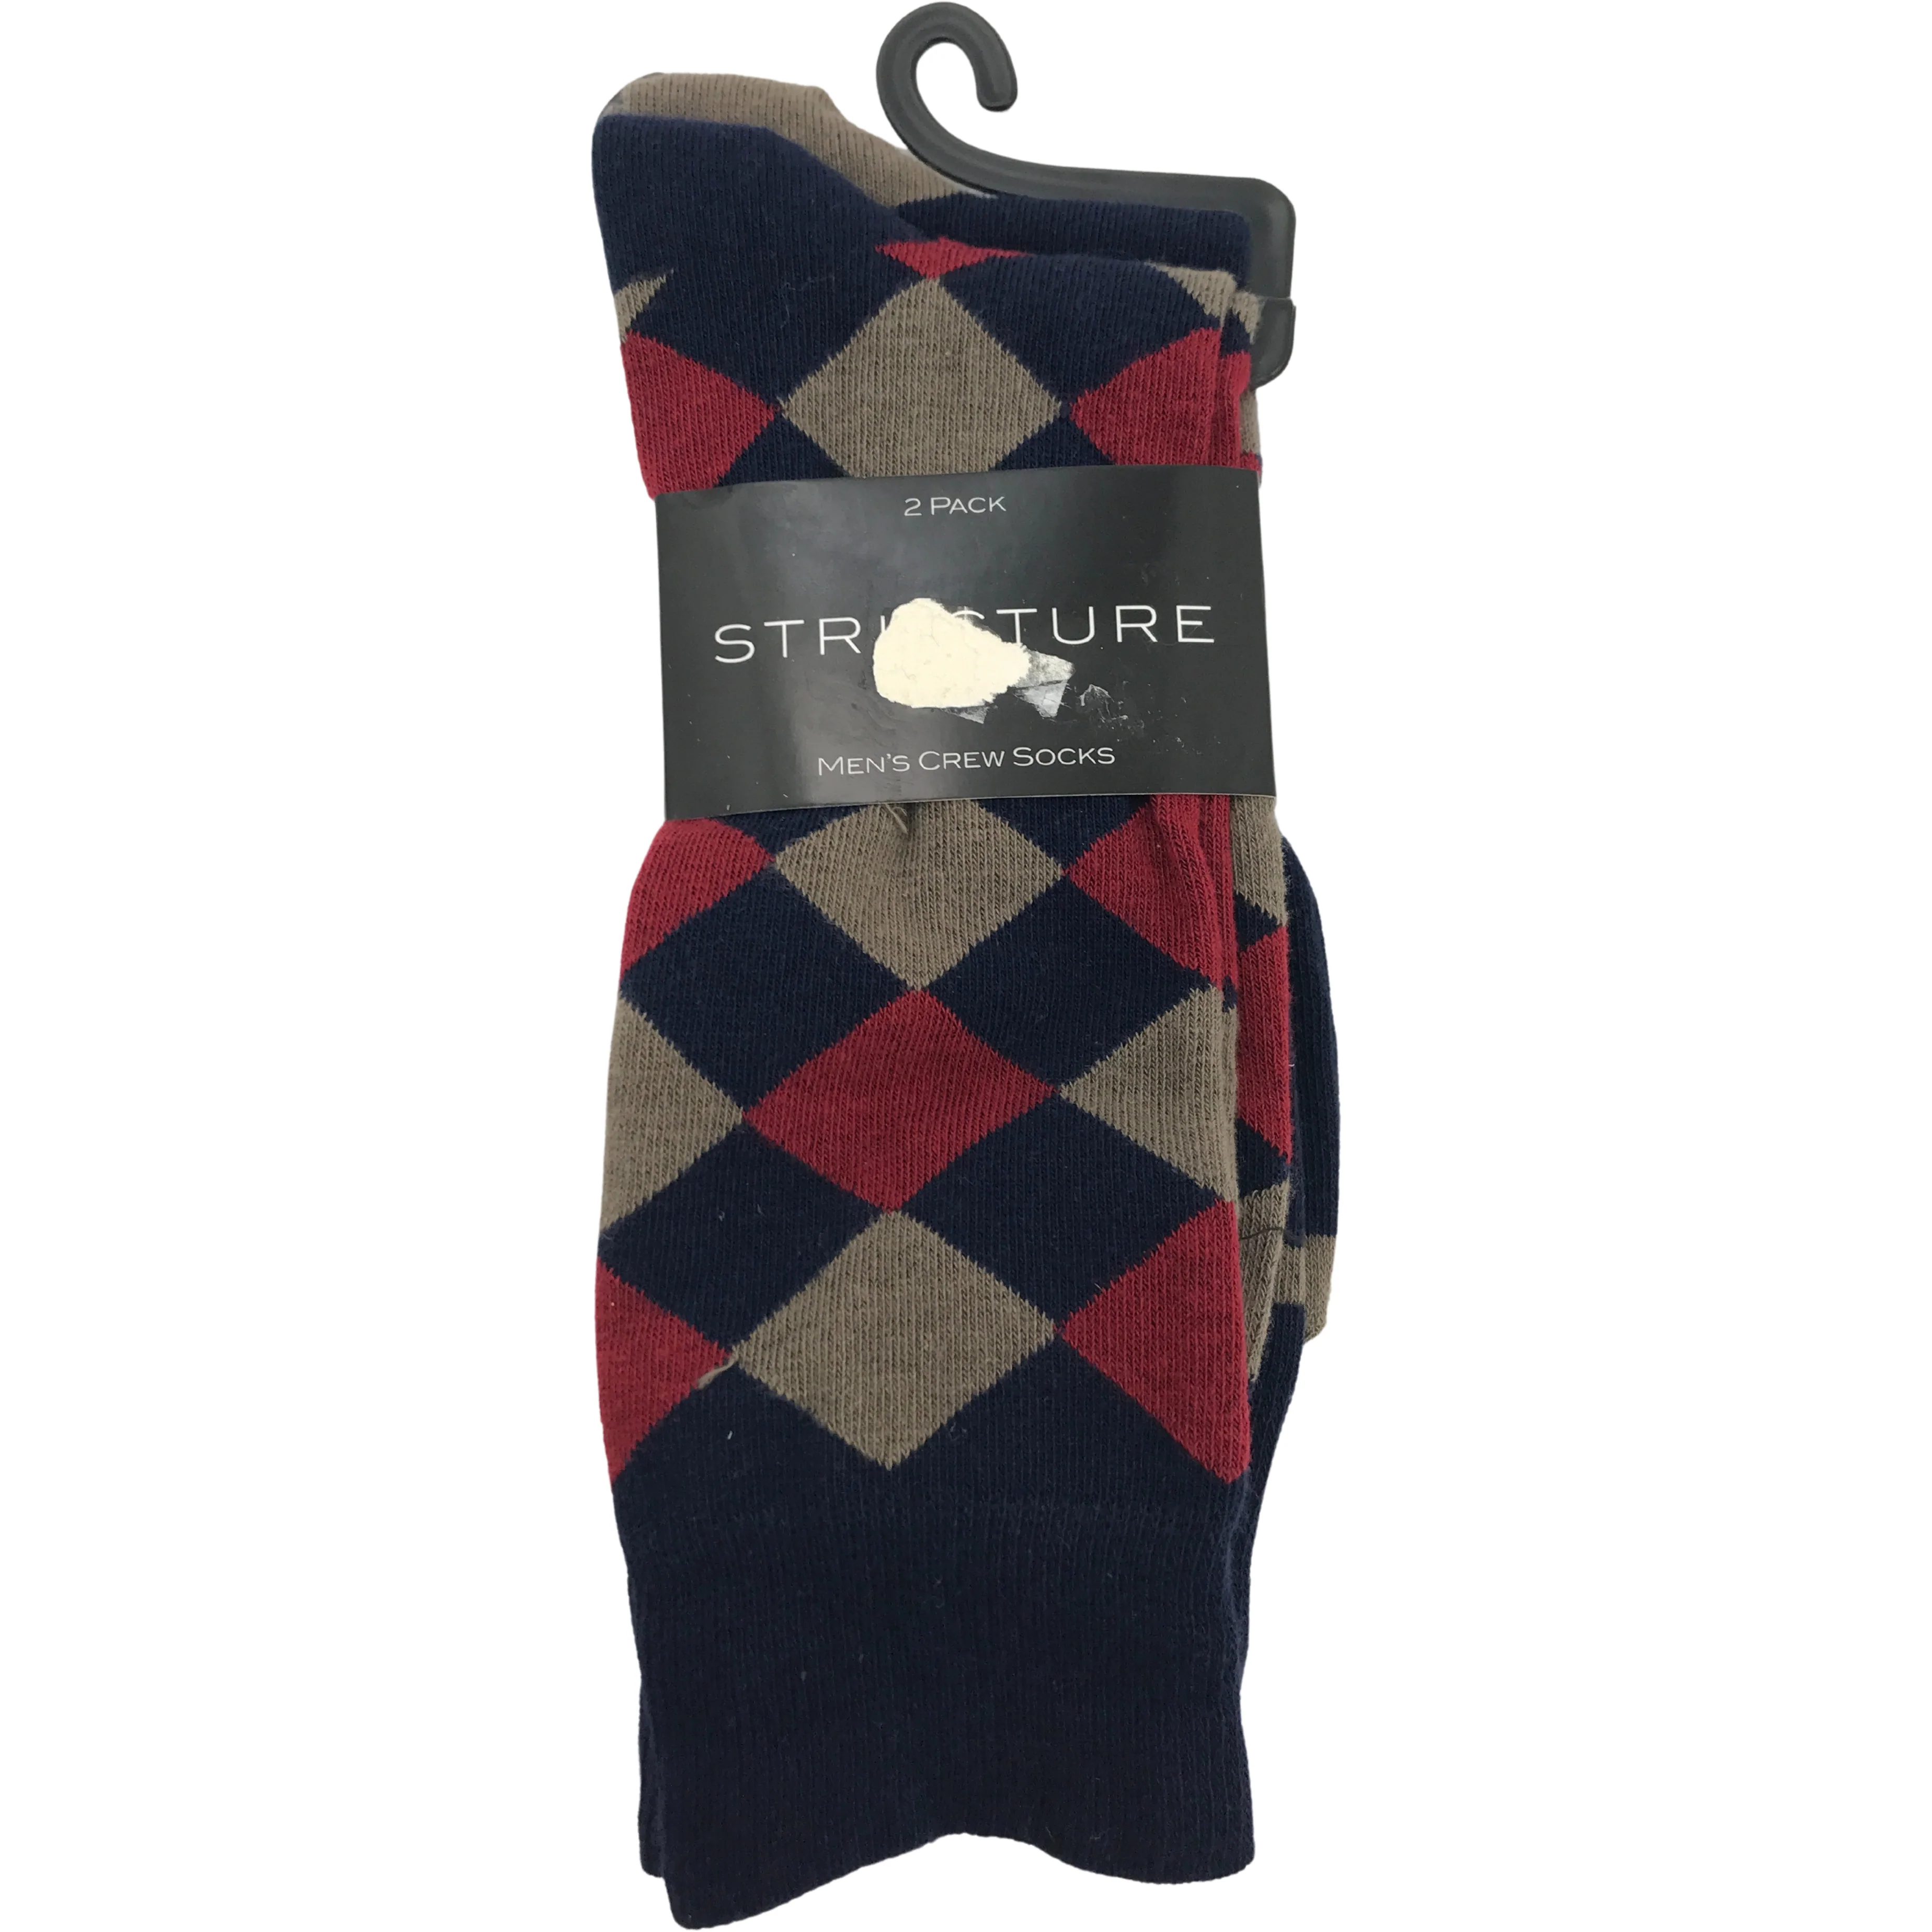 Structure Men's Socks / Crew Socks / Dress Socks / 2 Pack / Various Designs